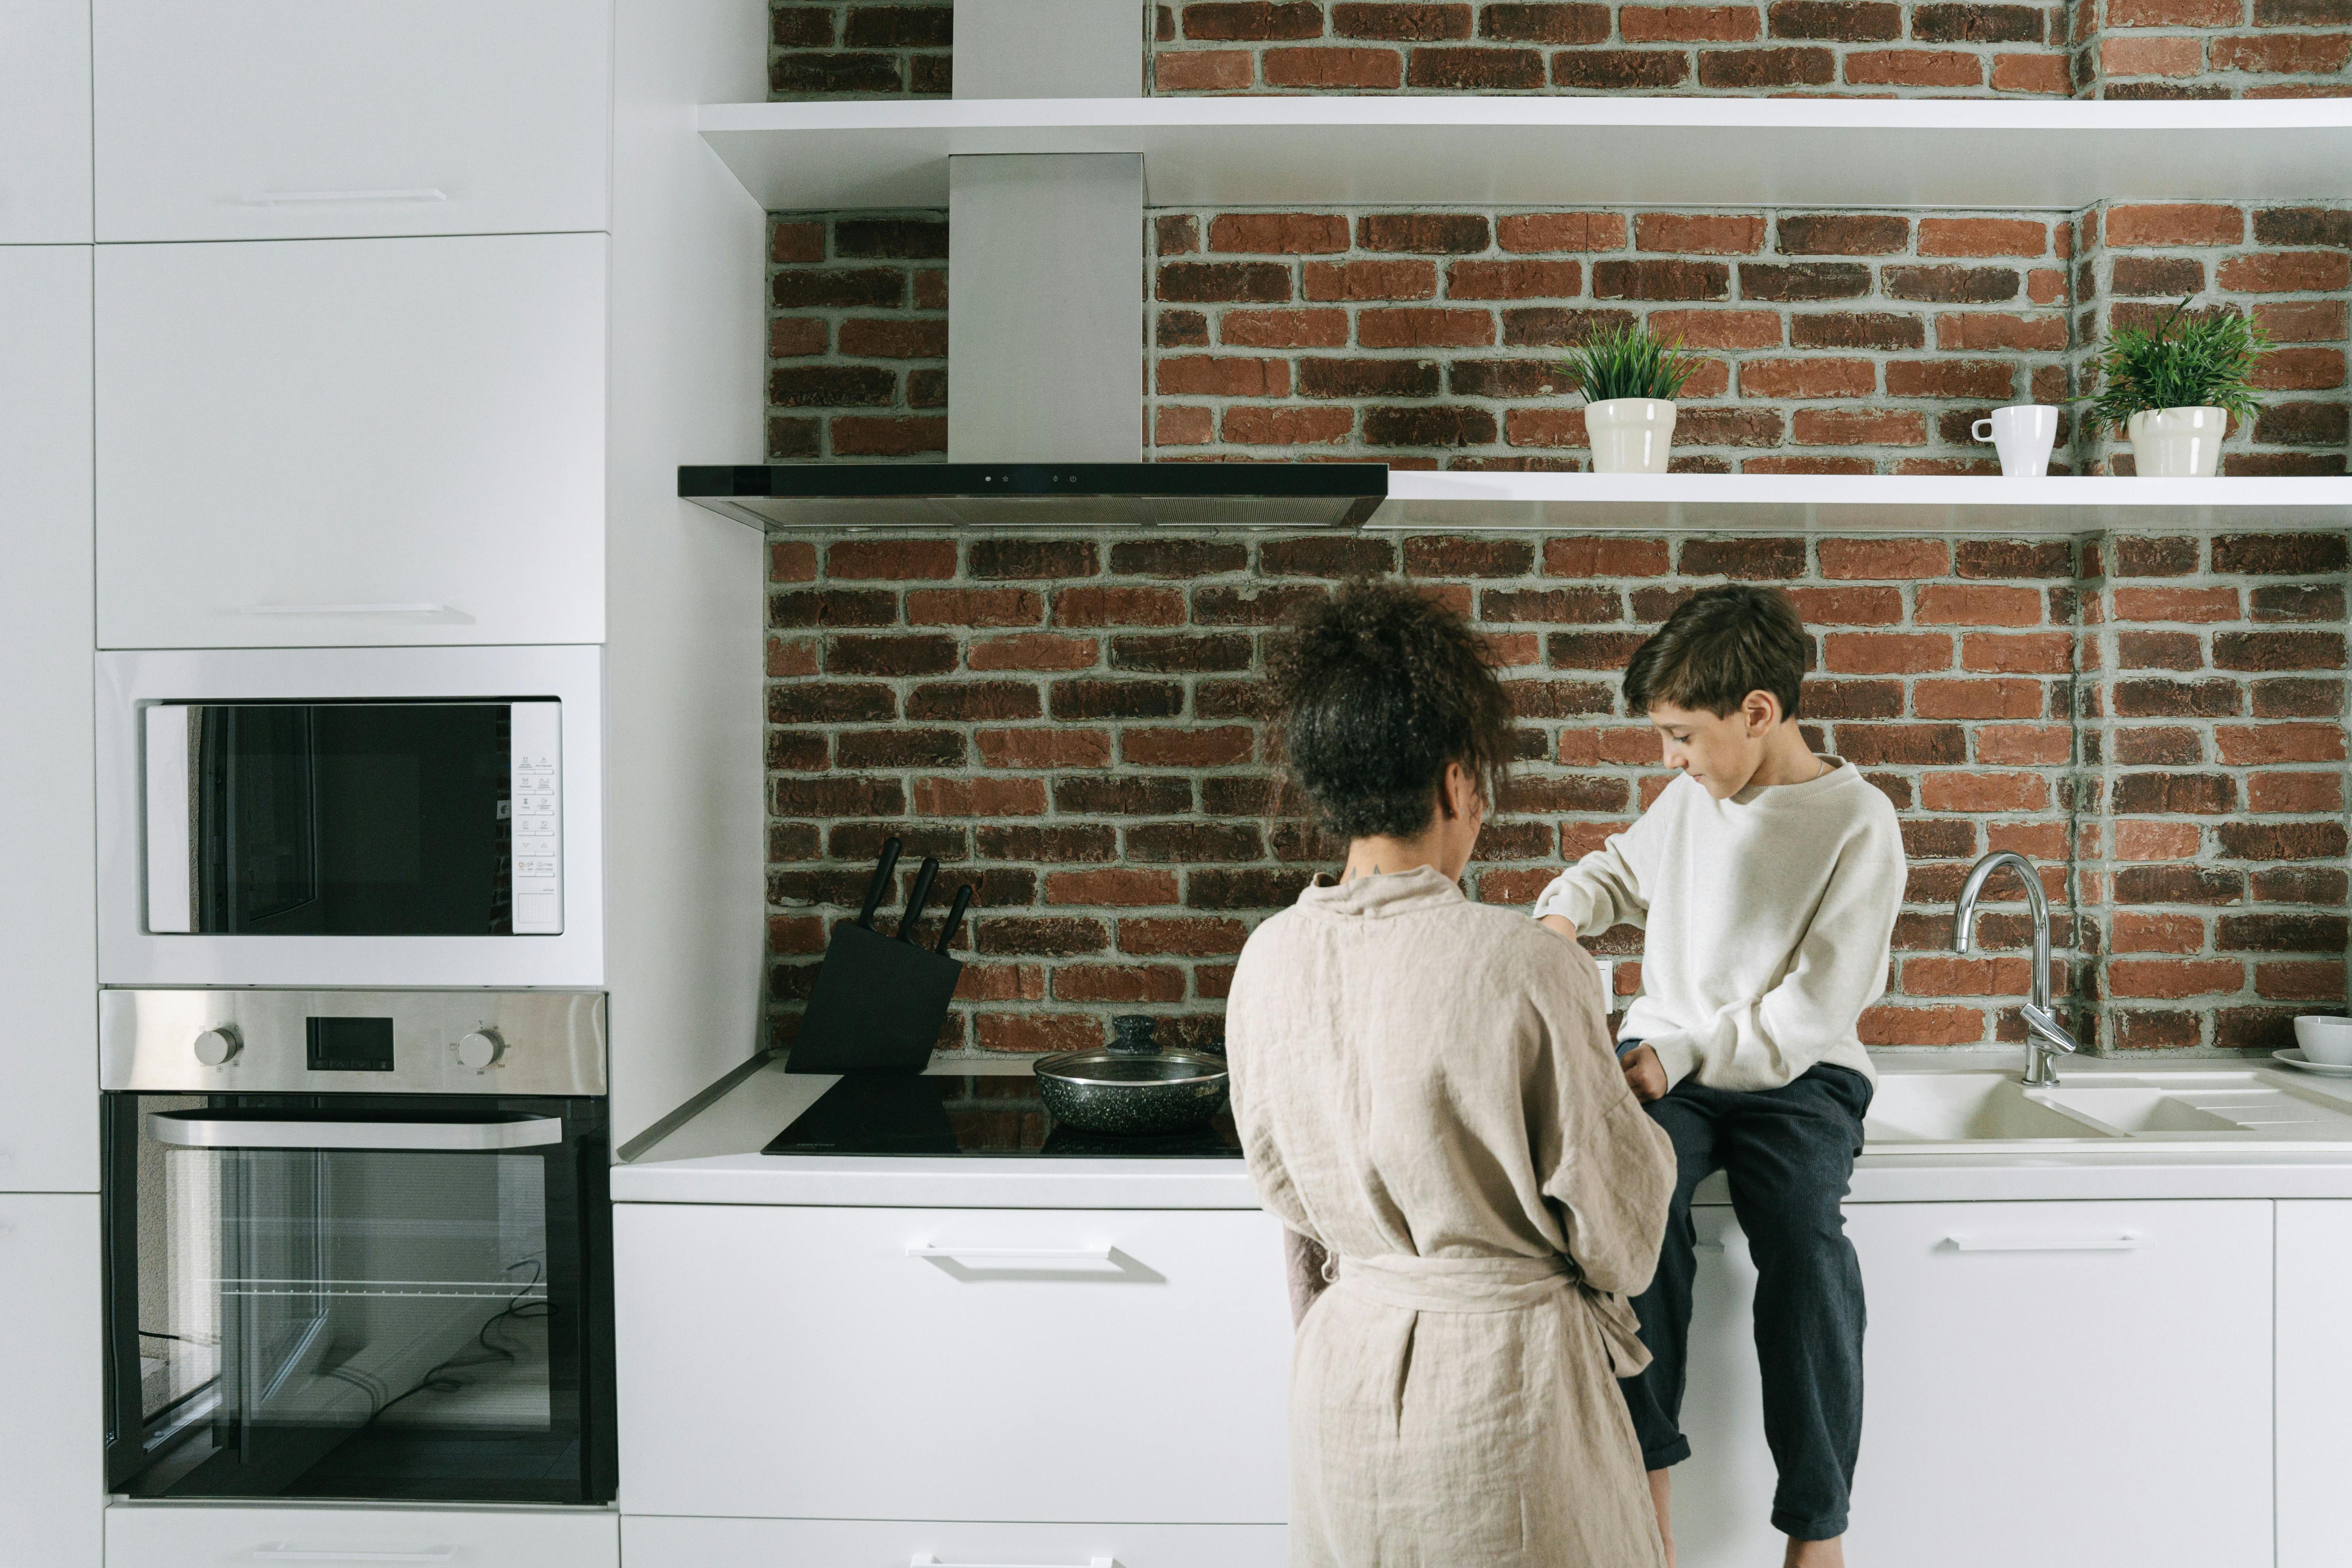 Una mujer y su hijo en la cocina | Fuente: Pexels